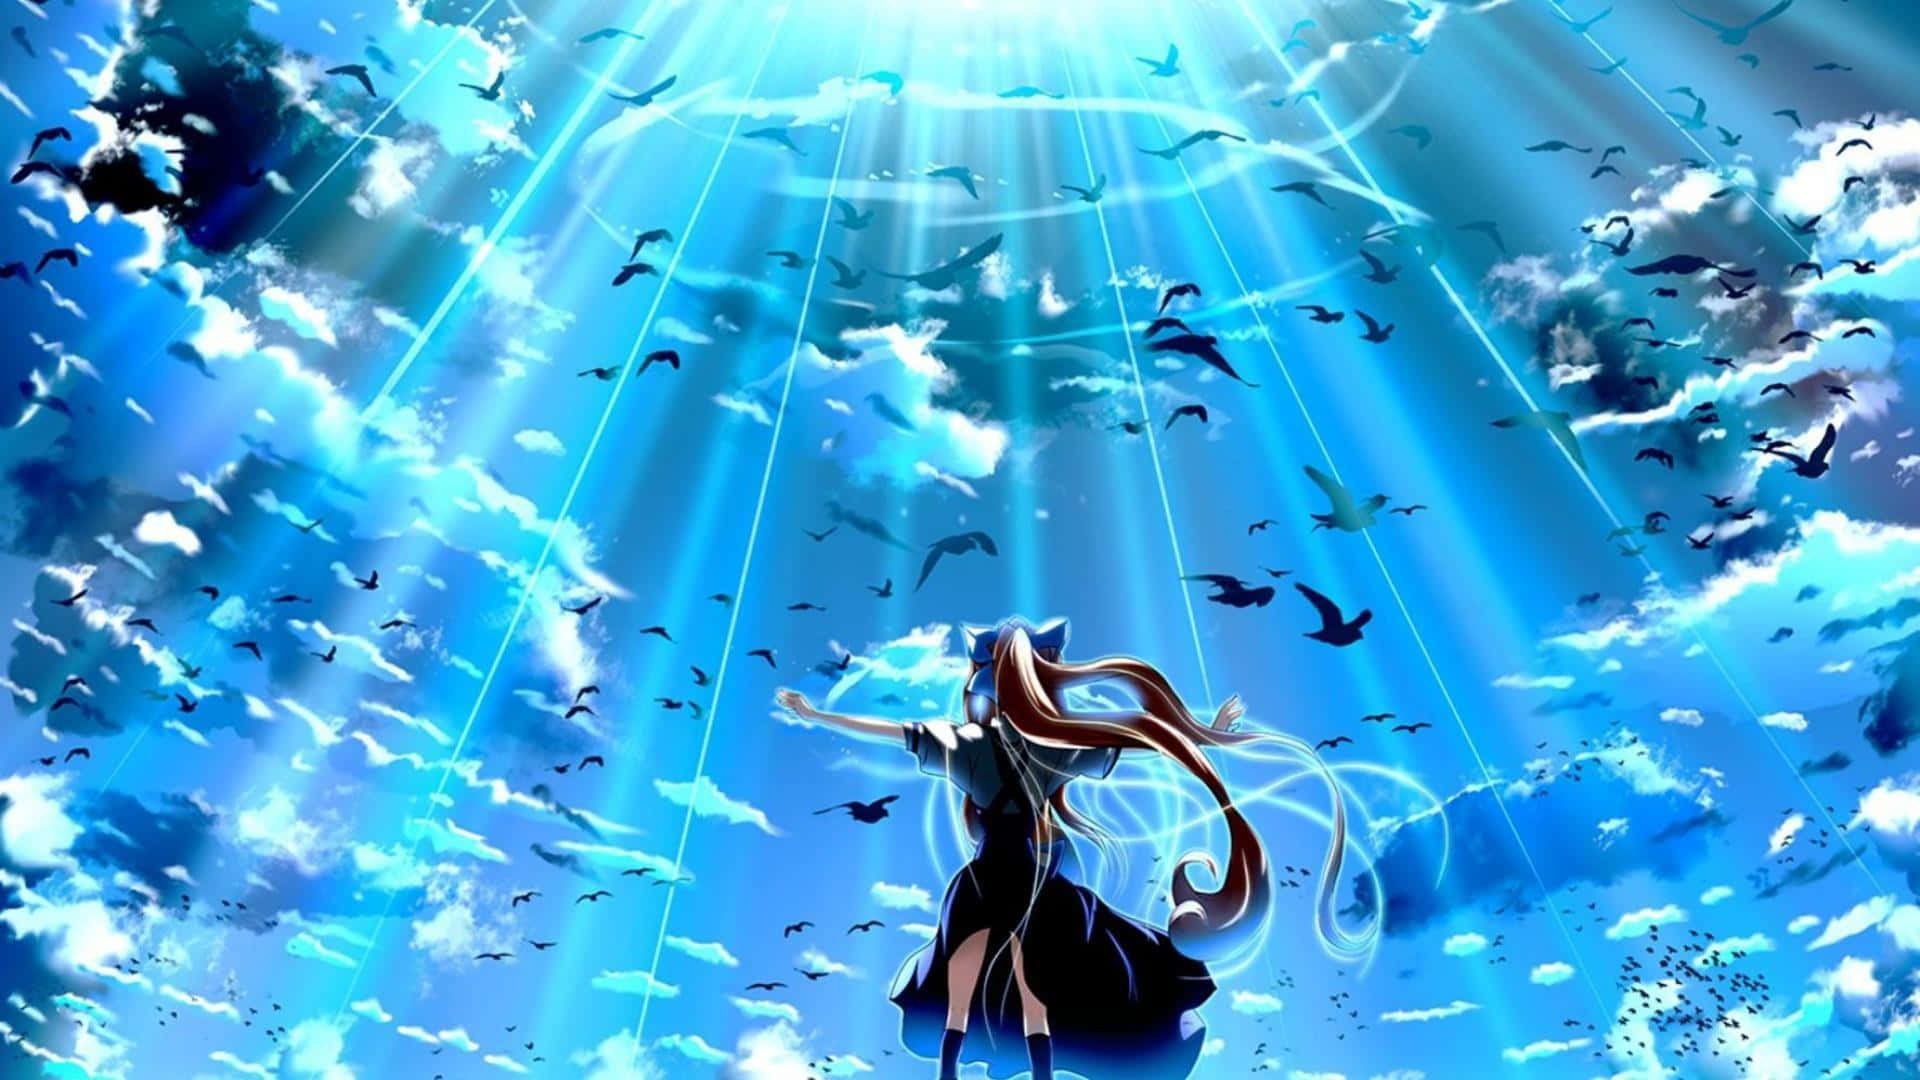 Fondode Pantalla Azul De Anime Con Un Cielo Lleno De Pájaros De Misuzu Kamio.